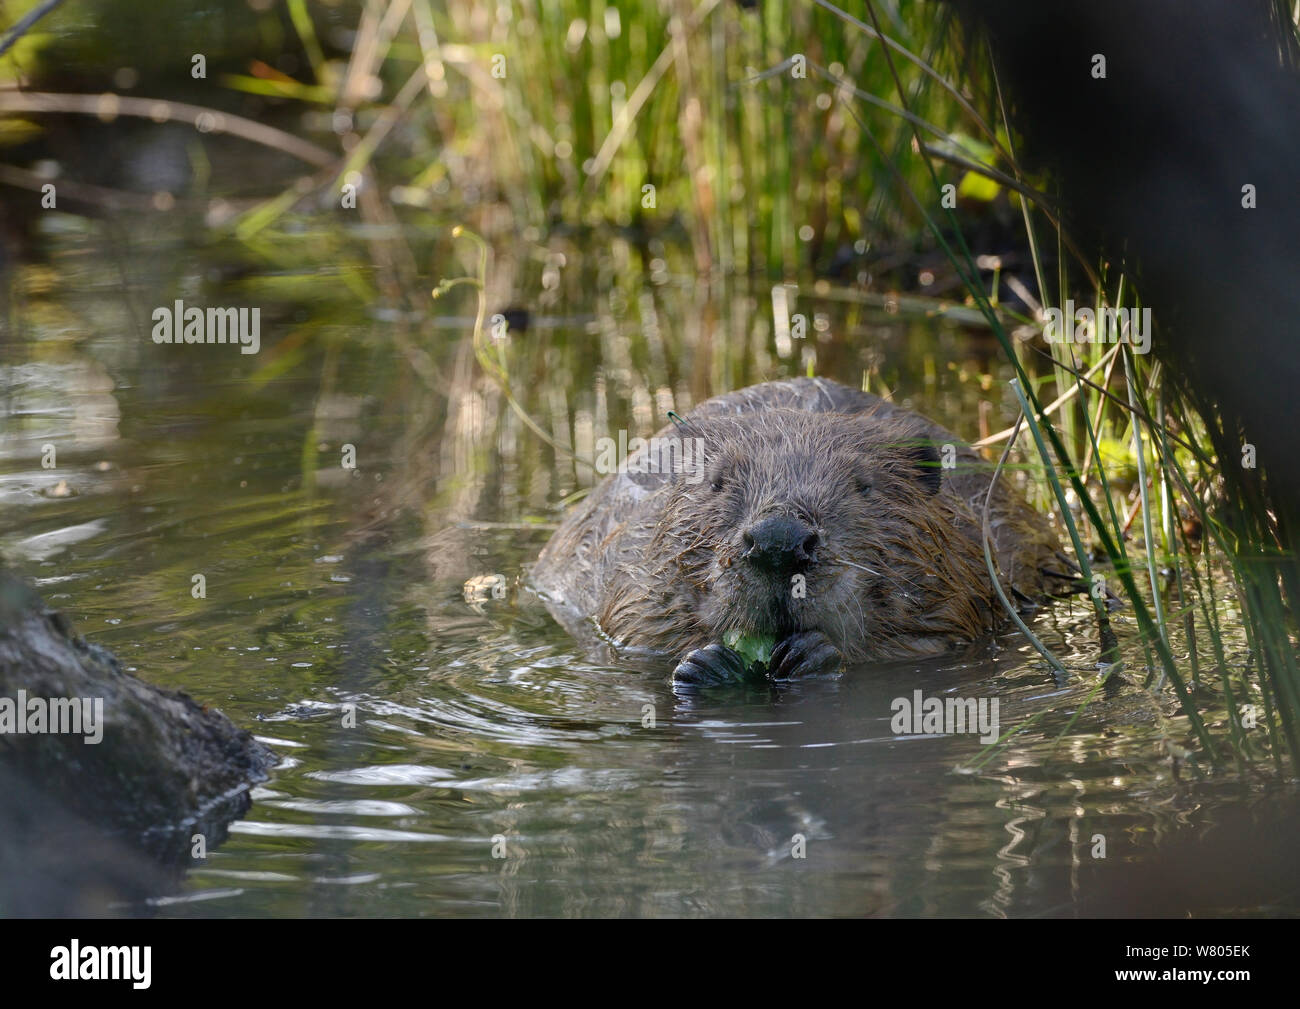 Le castor d'Eurasie (Castor fiber) manger des feuilles de bouleau dans un étang, partie de Devon Wildlife Trust&# 39;s Projet Castor Devon, Angleterre, Royaume-Uni, mai. Prises avec une caméra à distance. Banque D'Images